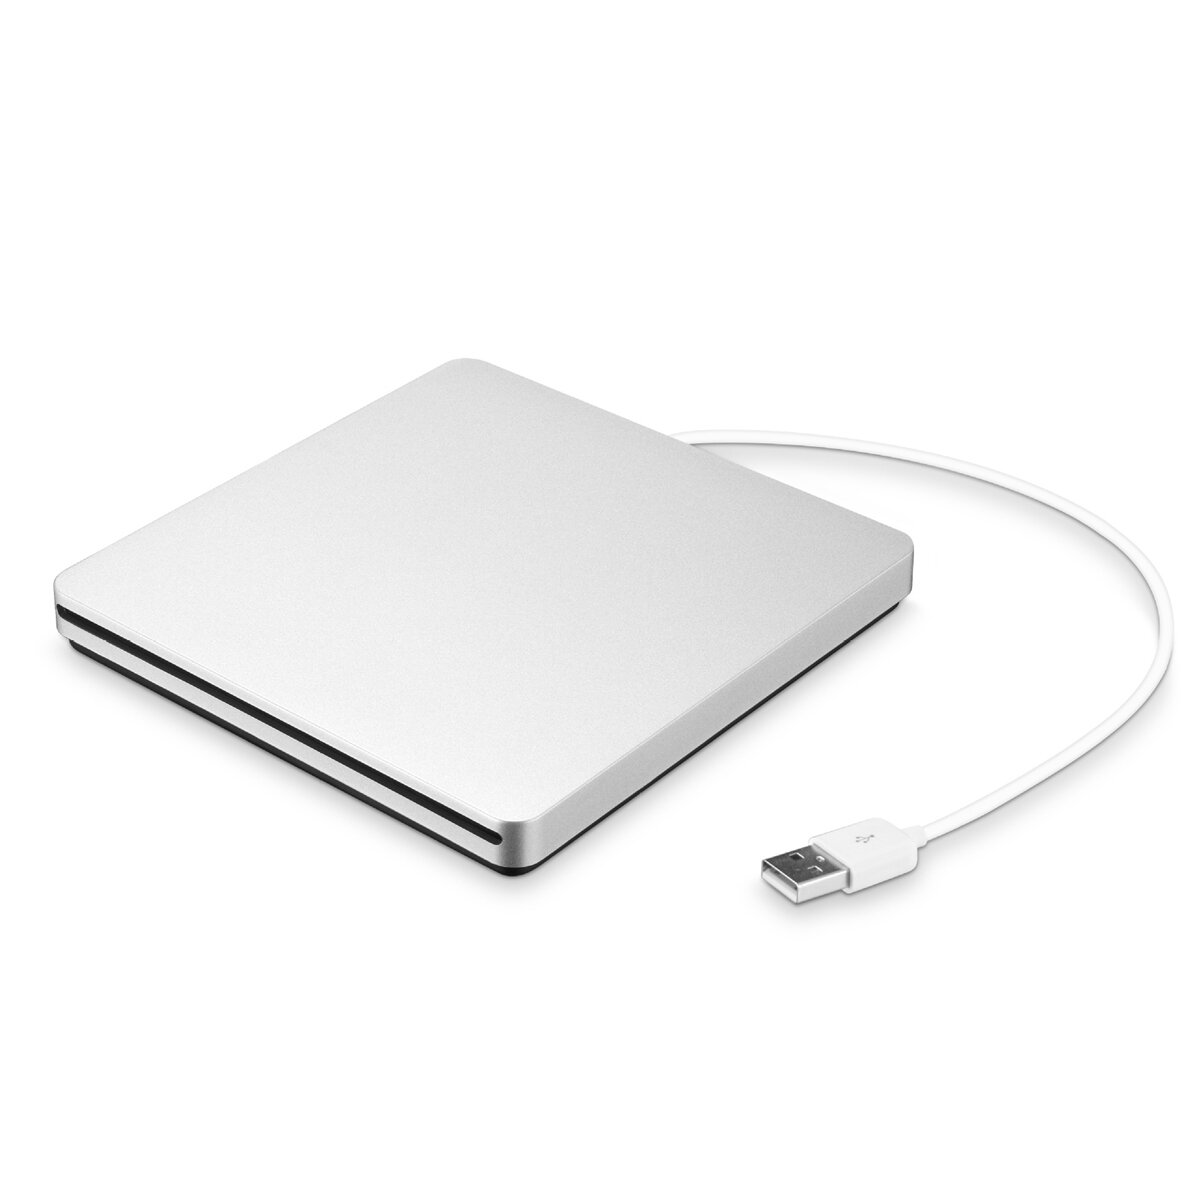 Draagbare USB 3.0 Zilver Externe DVD-RW Max. 24X Snelle gegevensoverdracht voor Win XP Win 7 Win 8 W